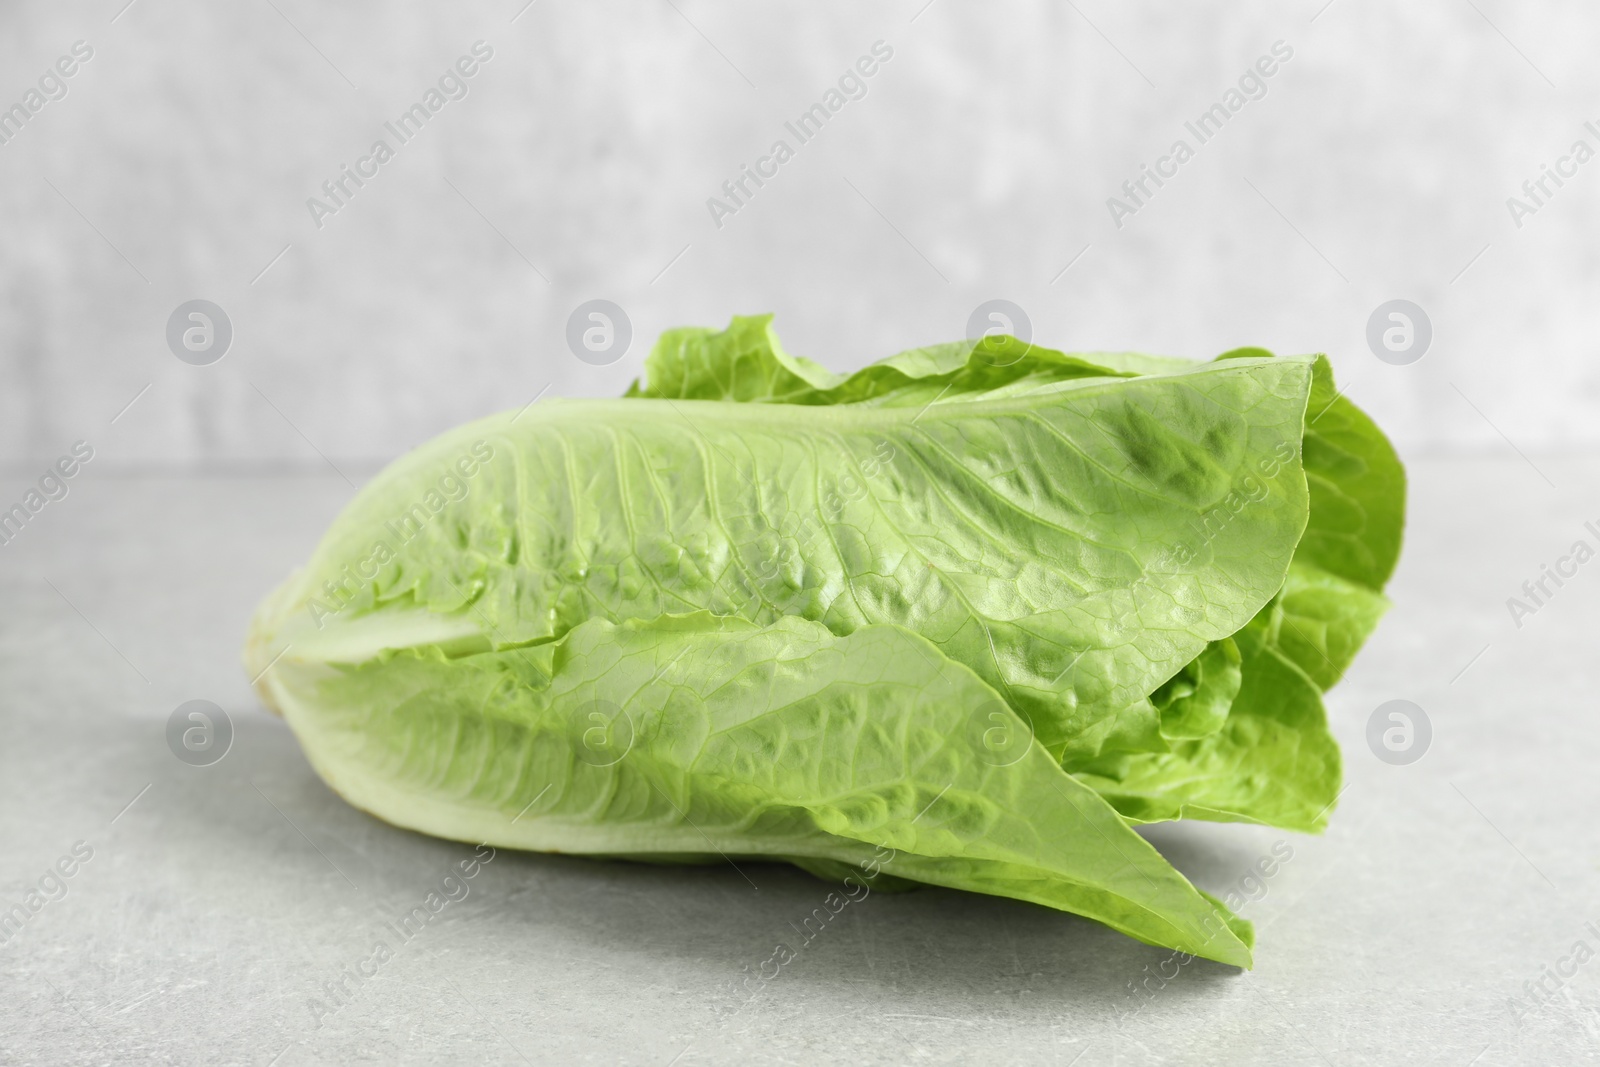 Photo of Fresh green romaine lettuce on light grey table